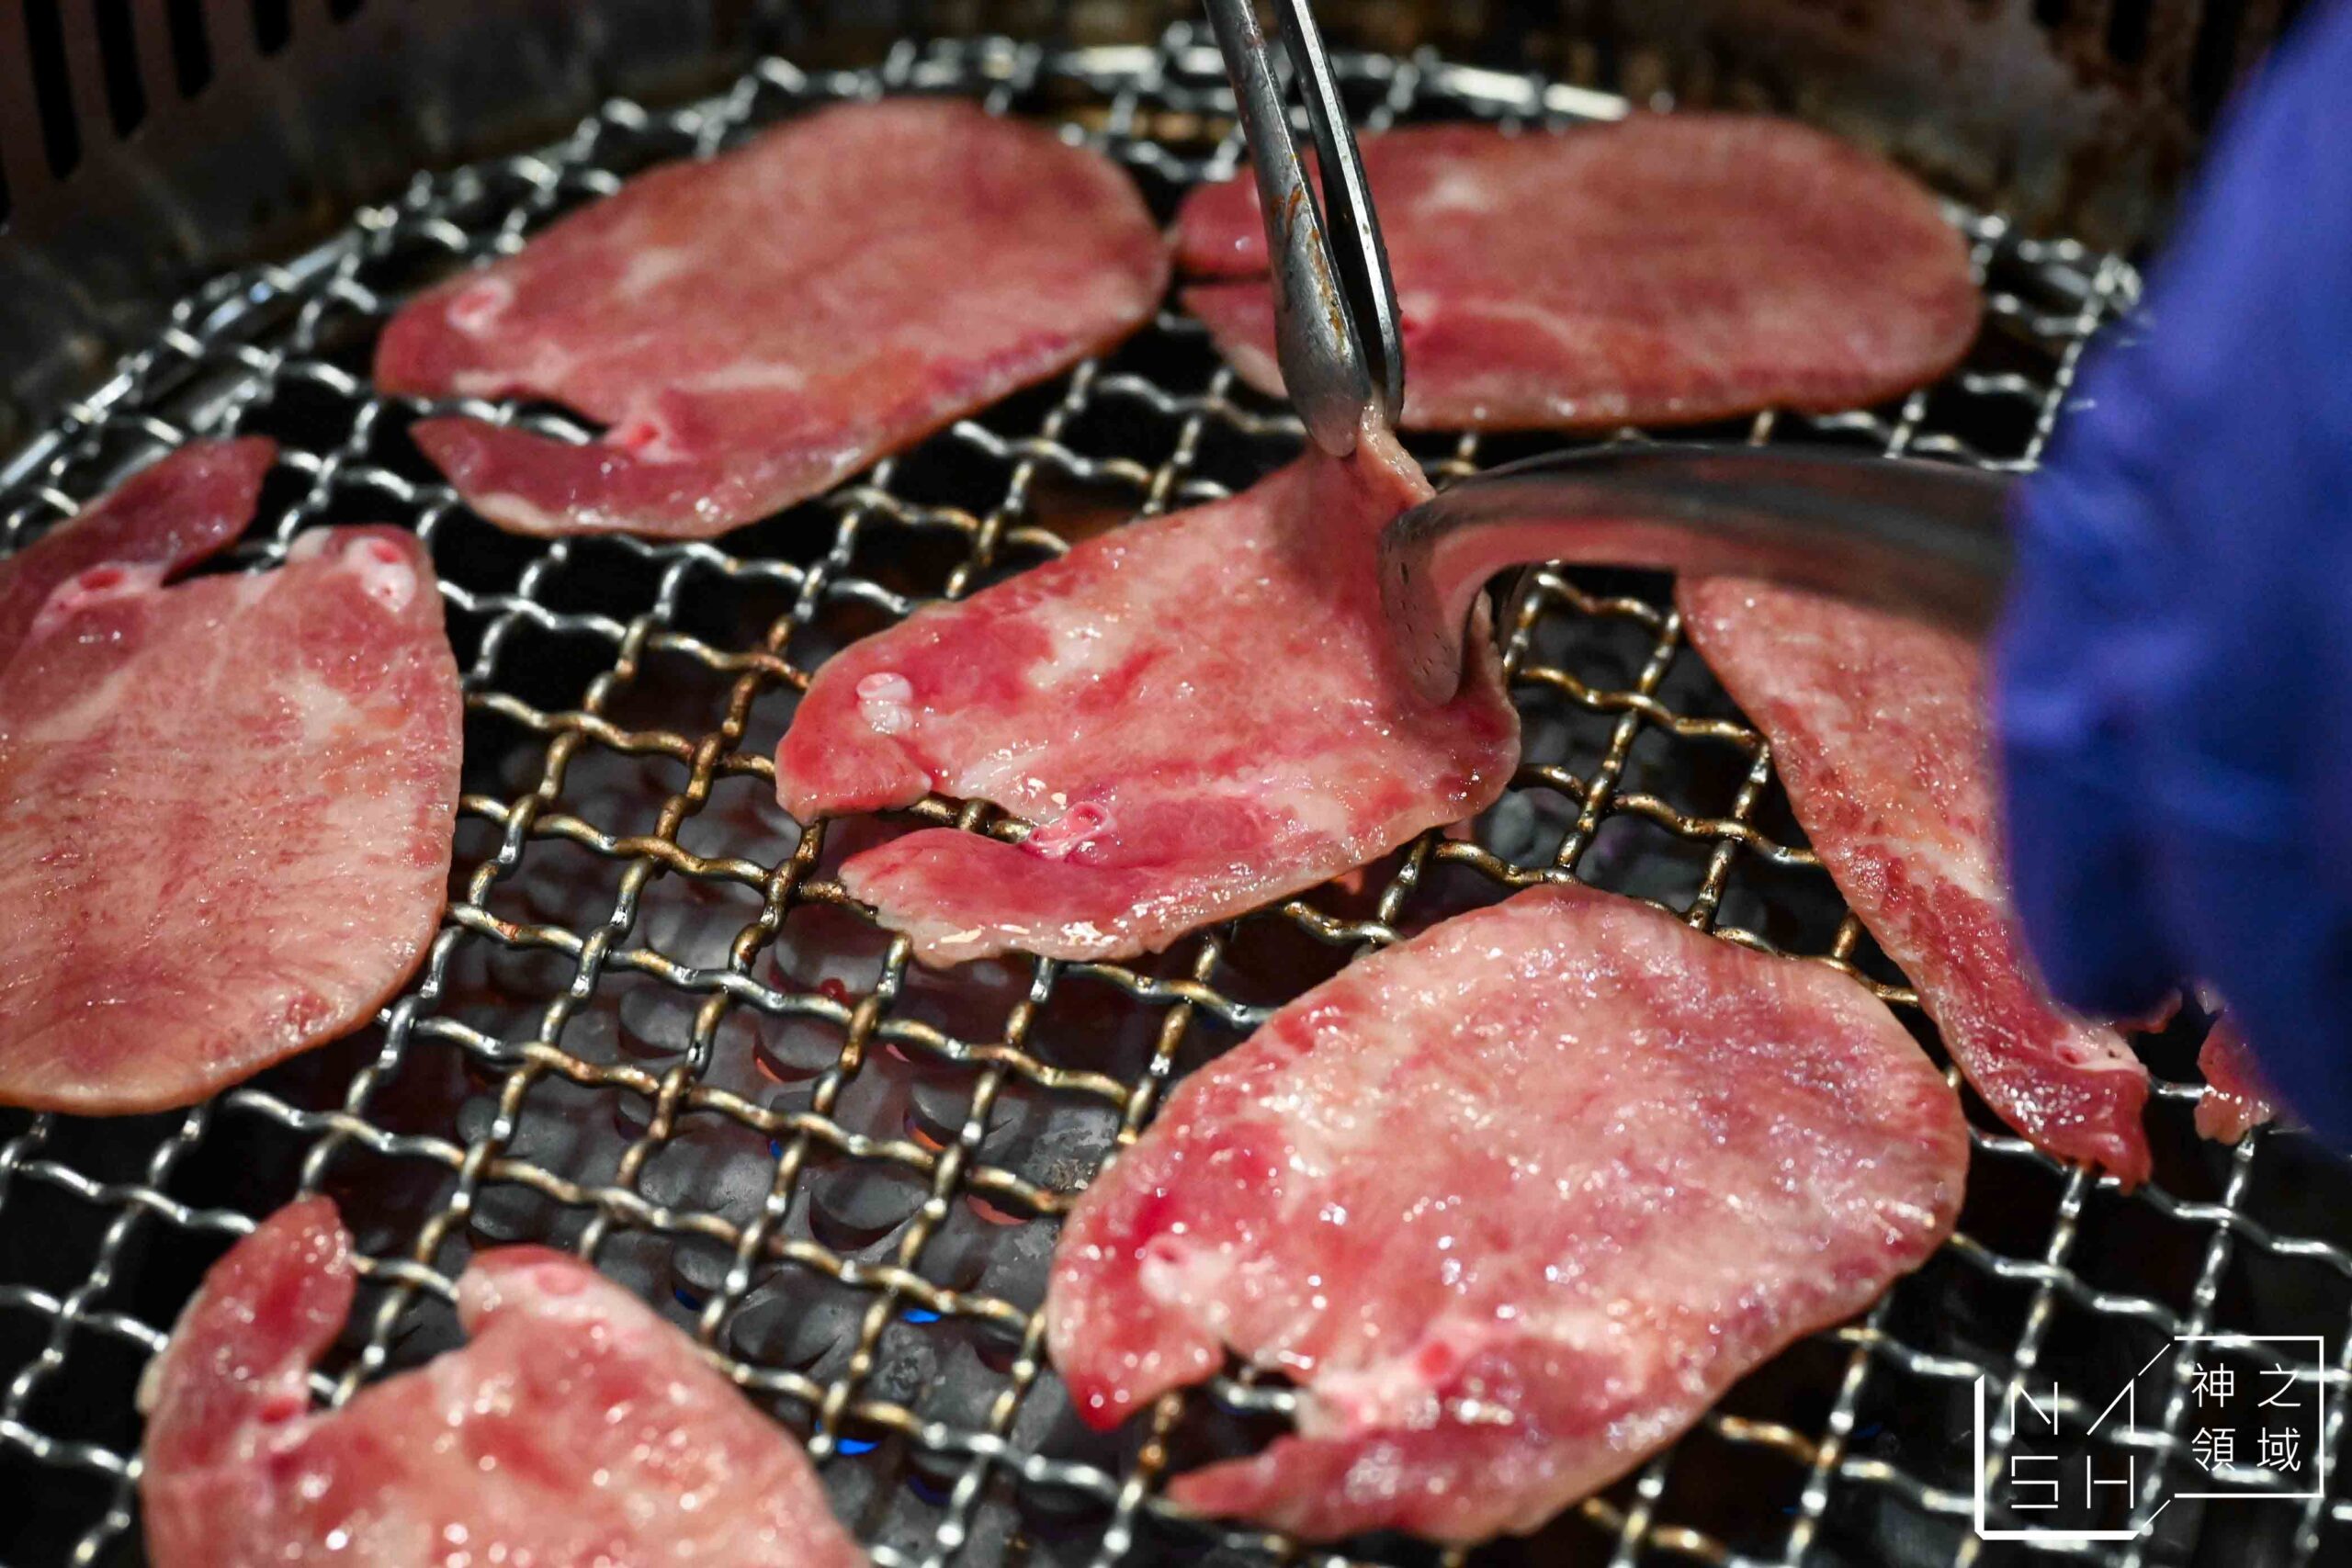 吃肉肉CHIH ROU ROU燒肉専門店